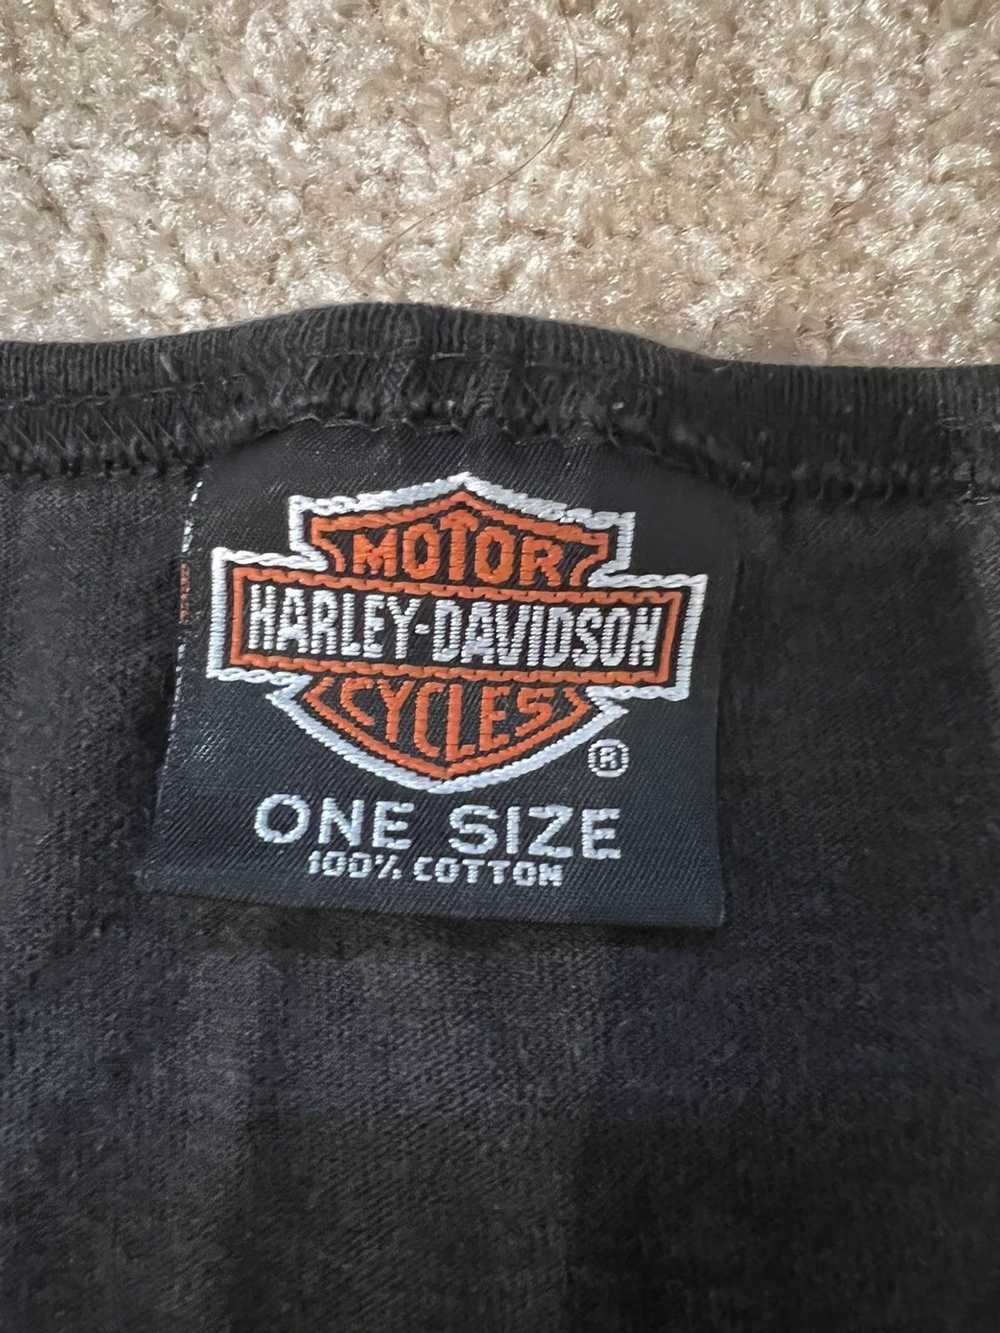 Harley Davidson × Vintage VINTAGE HARLEY DAVIDSON - image 3